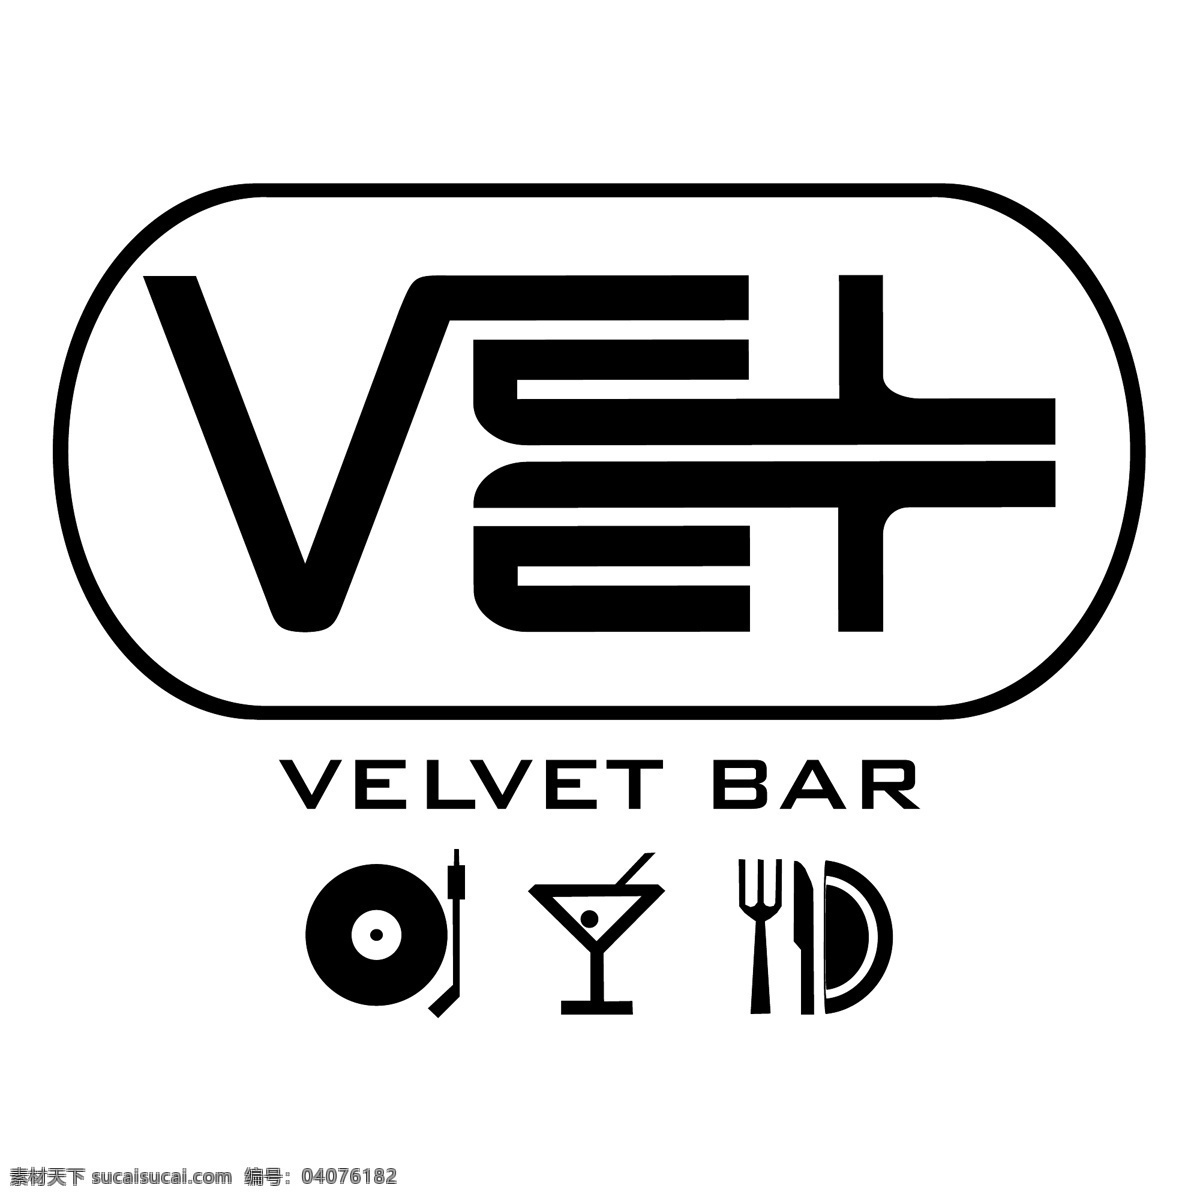 天鹅绒 酒吧 自由 丝绒 棒 商标 标识 psd源文件 logo设计